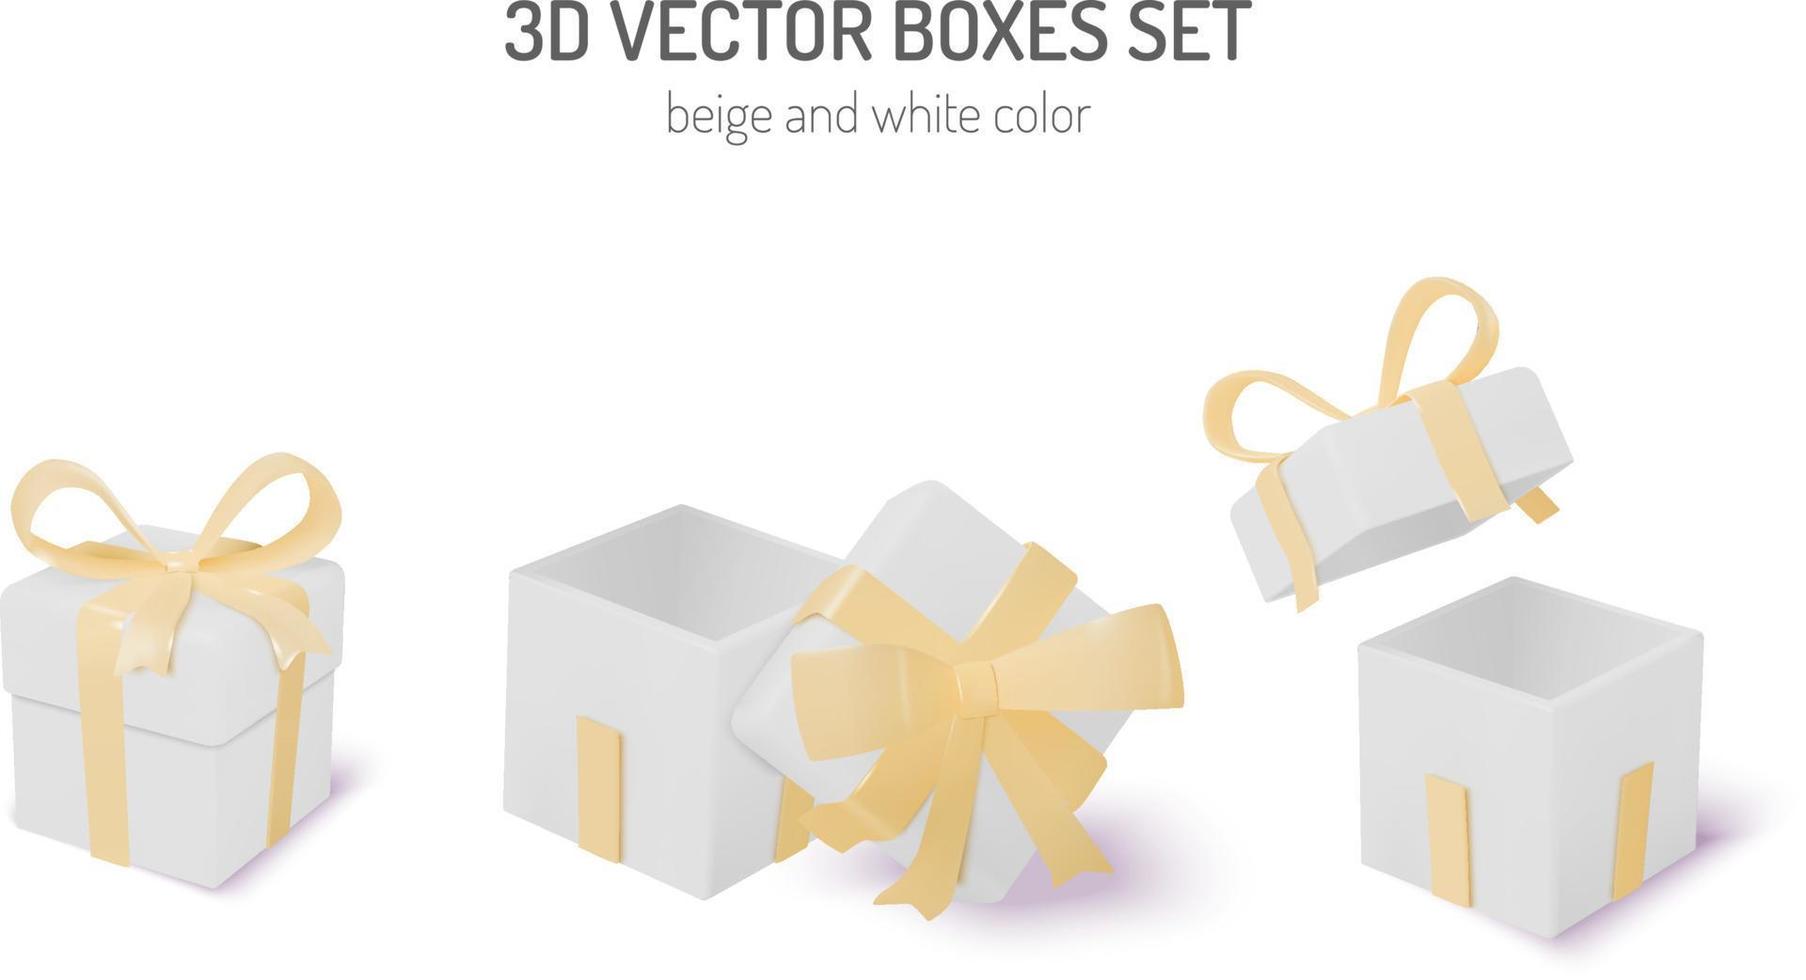 beige und weiße 3D-Geschenkboxen eingestellt vektor